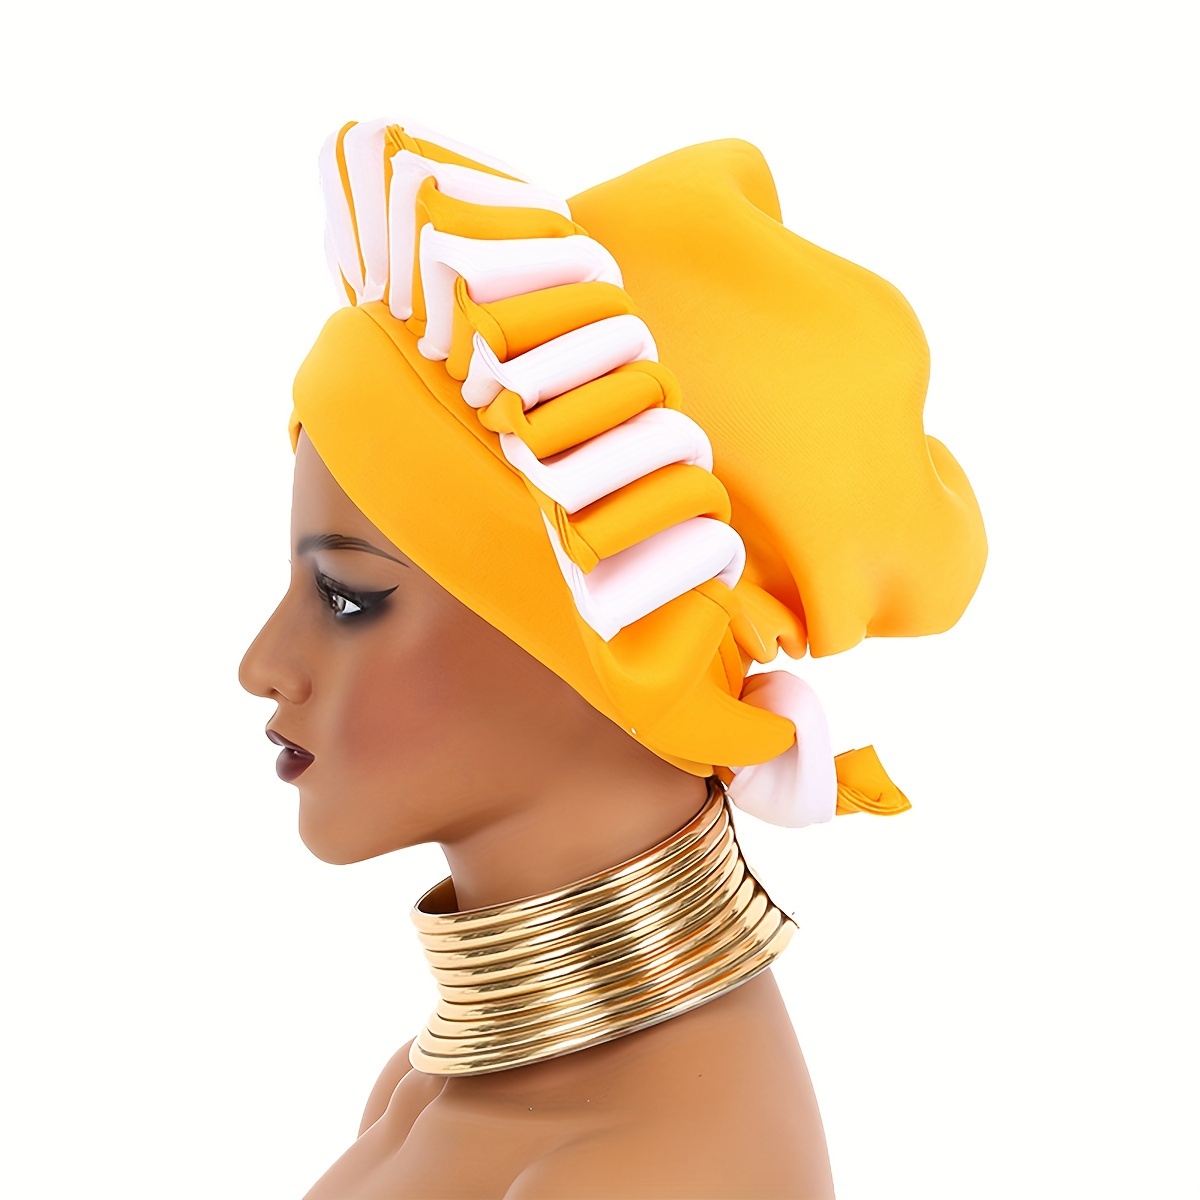 Sombrero musulmán africano, hiyab de corona tejida a mano, estilo étnico boho, turbante de capa espacial, accesorio cultural, accesorio de fotografía de cosplay, suministro para fiestas LARP, accesorio para representaciones teatrales.